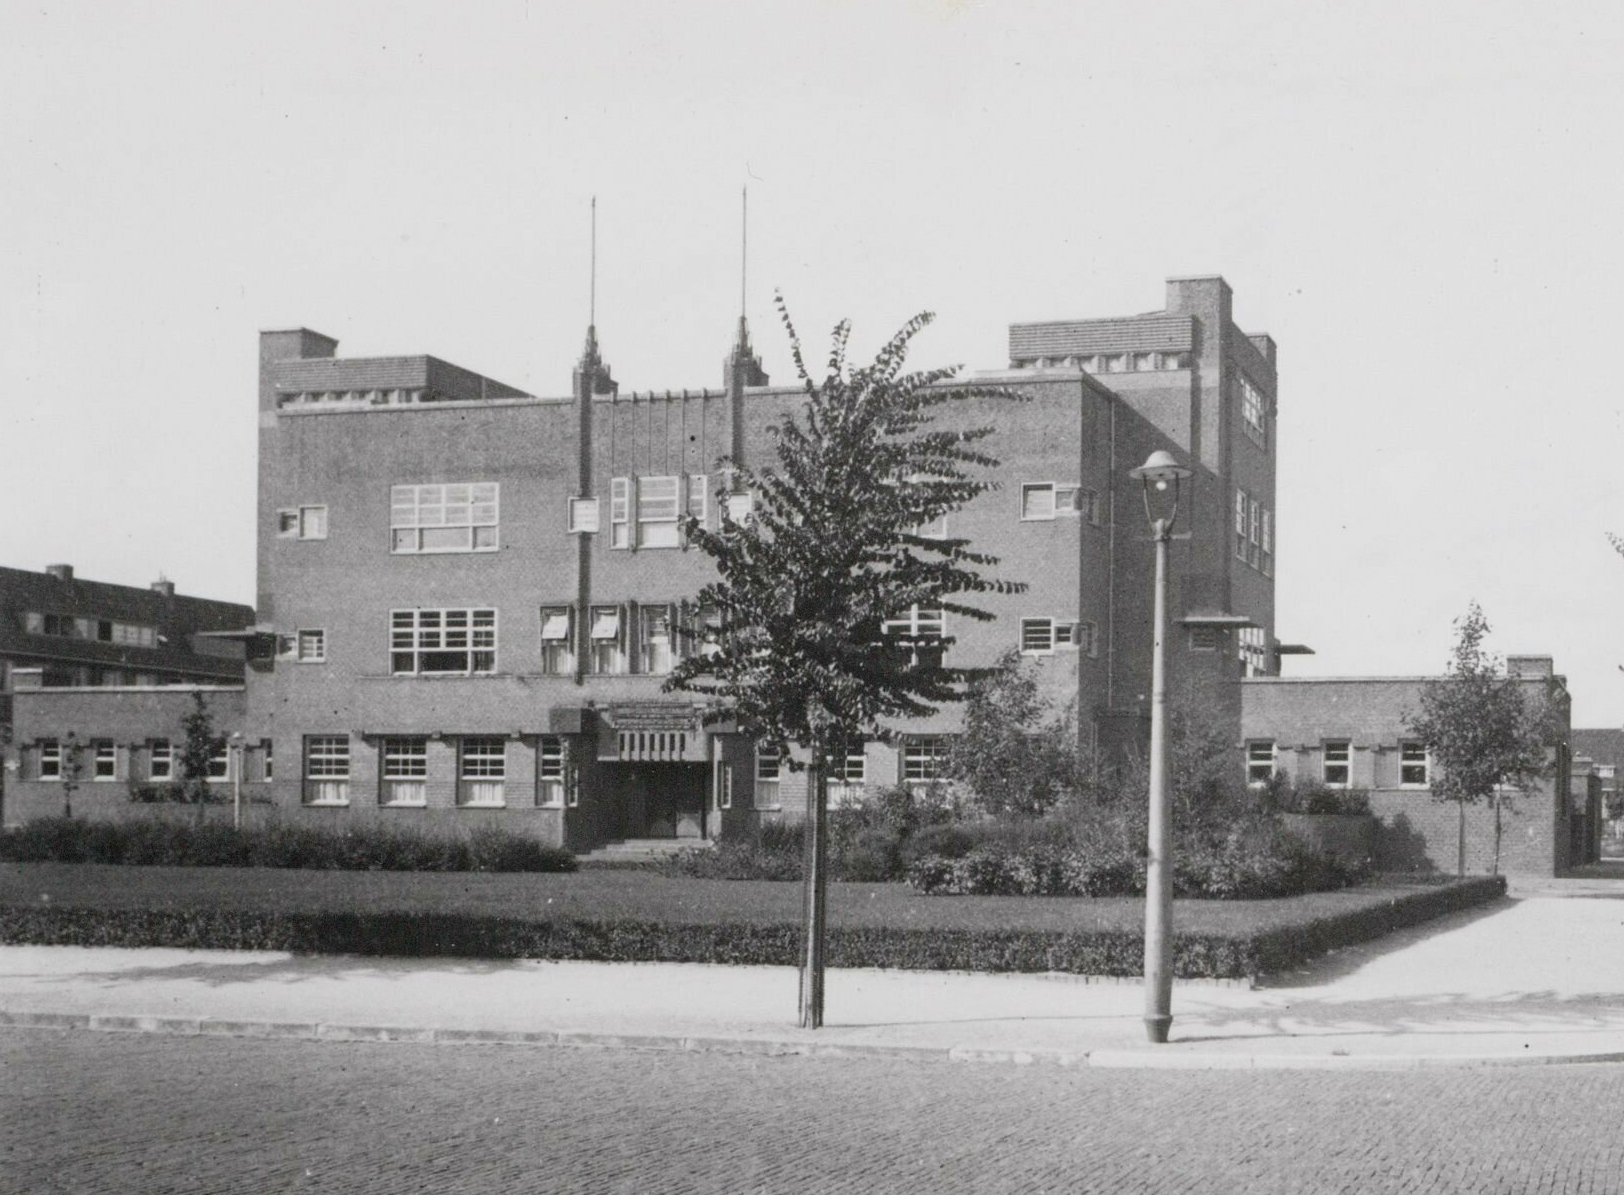 Het gebouw van de Zentrallstelle in gebruik als Christelijke HBS. Amsterdam, 1932.